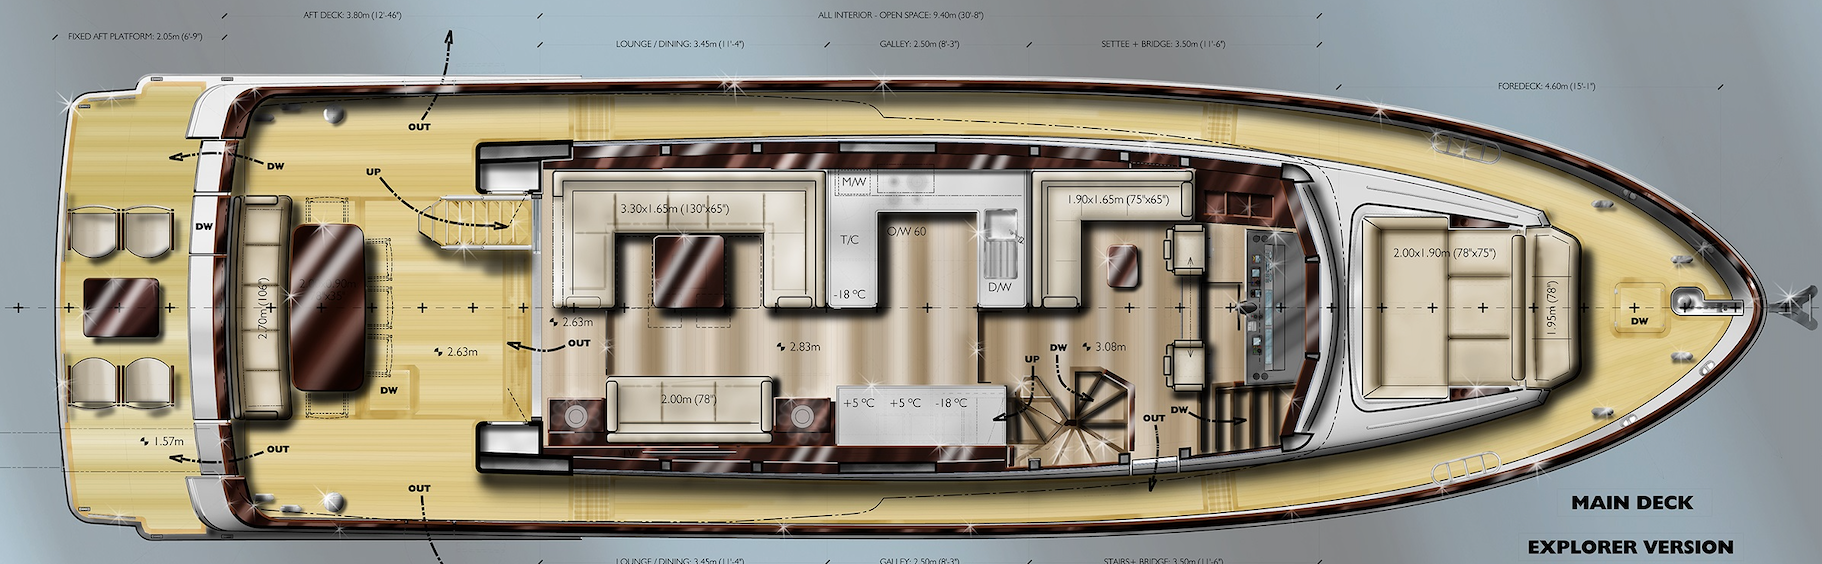 Offshore Yachts, CE series Explorer, deck plan